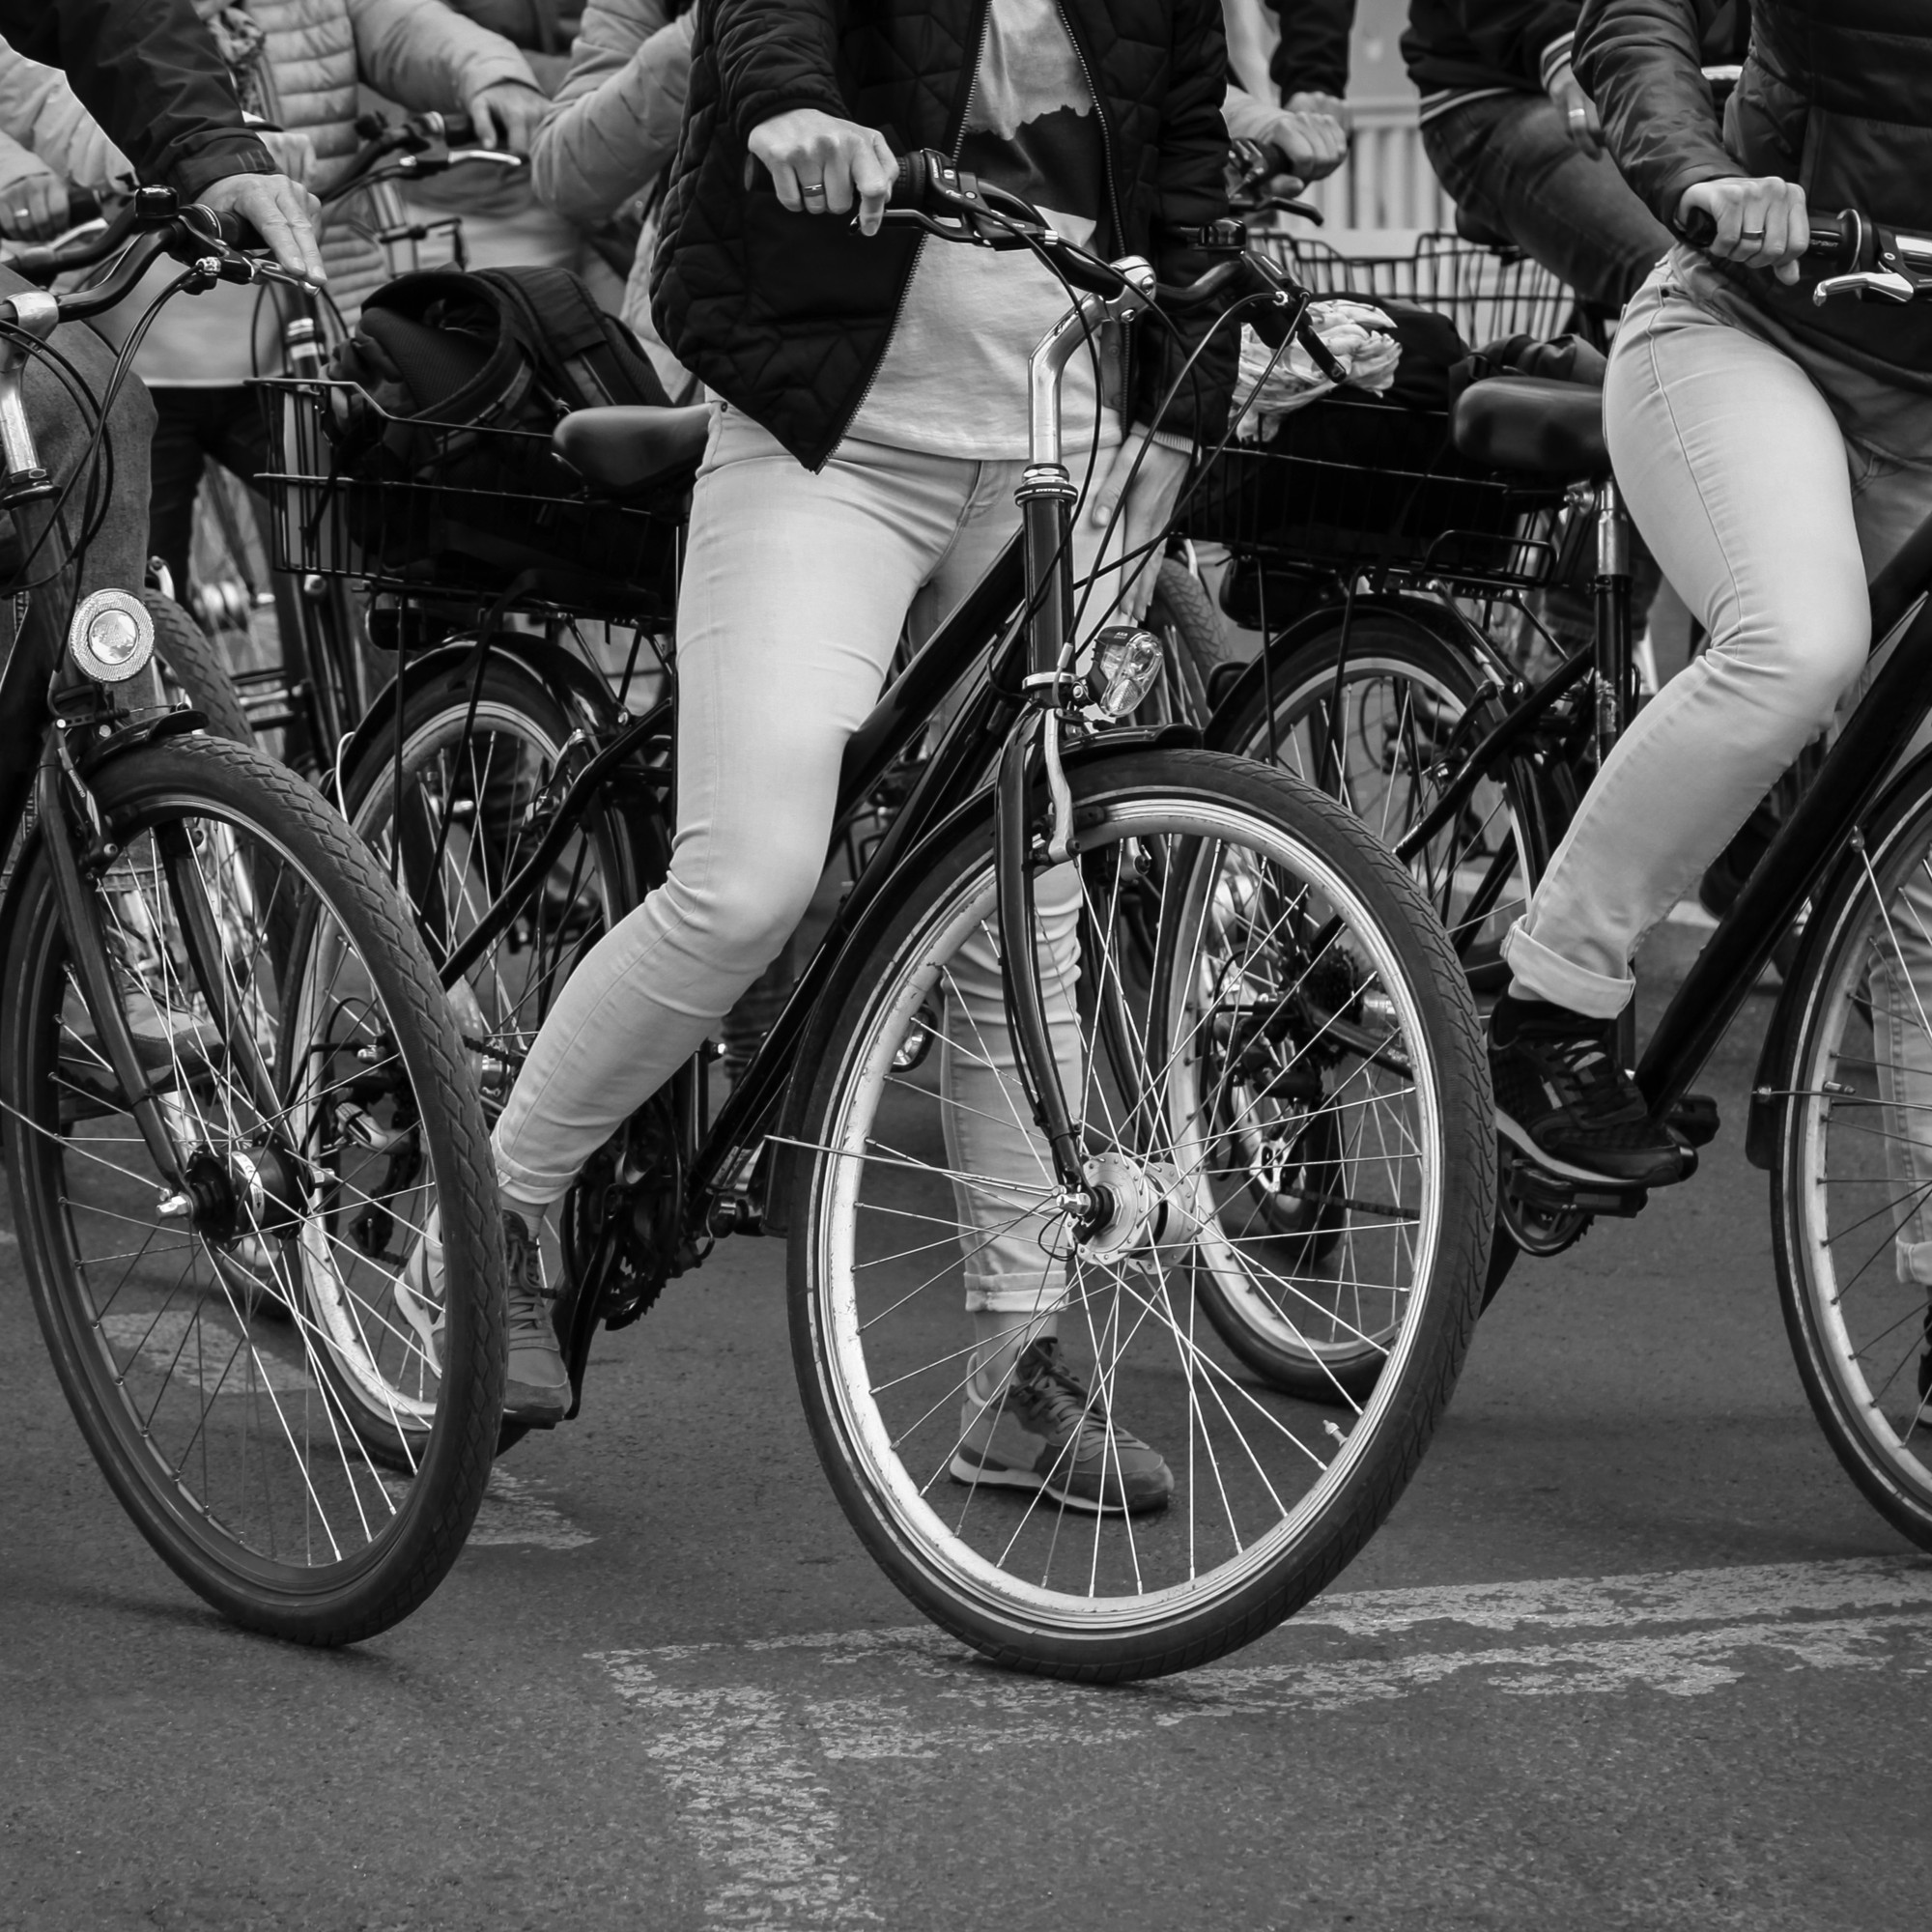 Cyklister i stadsmiljö.